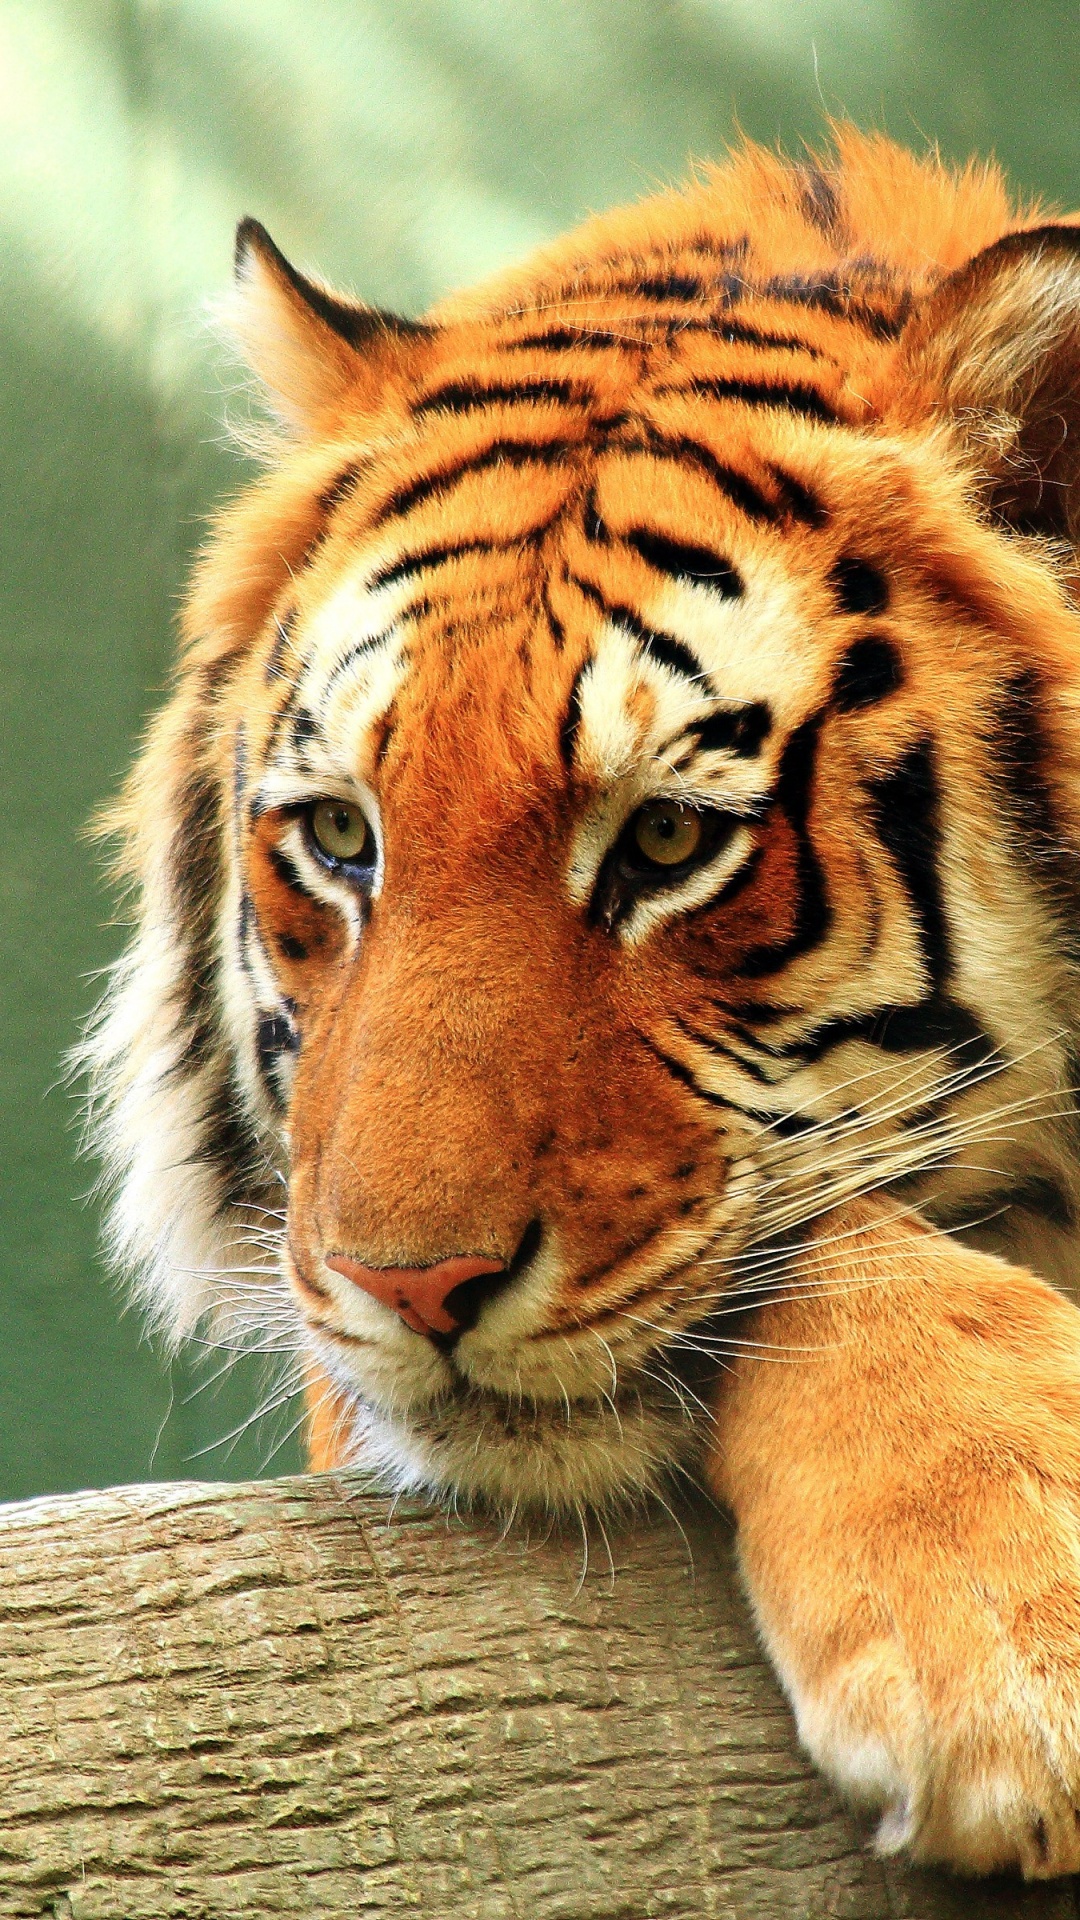 孟加拉虎, 金虎, 老虎, 野生动物, 陆地动物 壁纸 1080x1920 允许